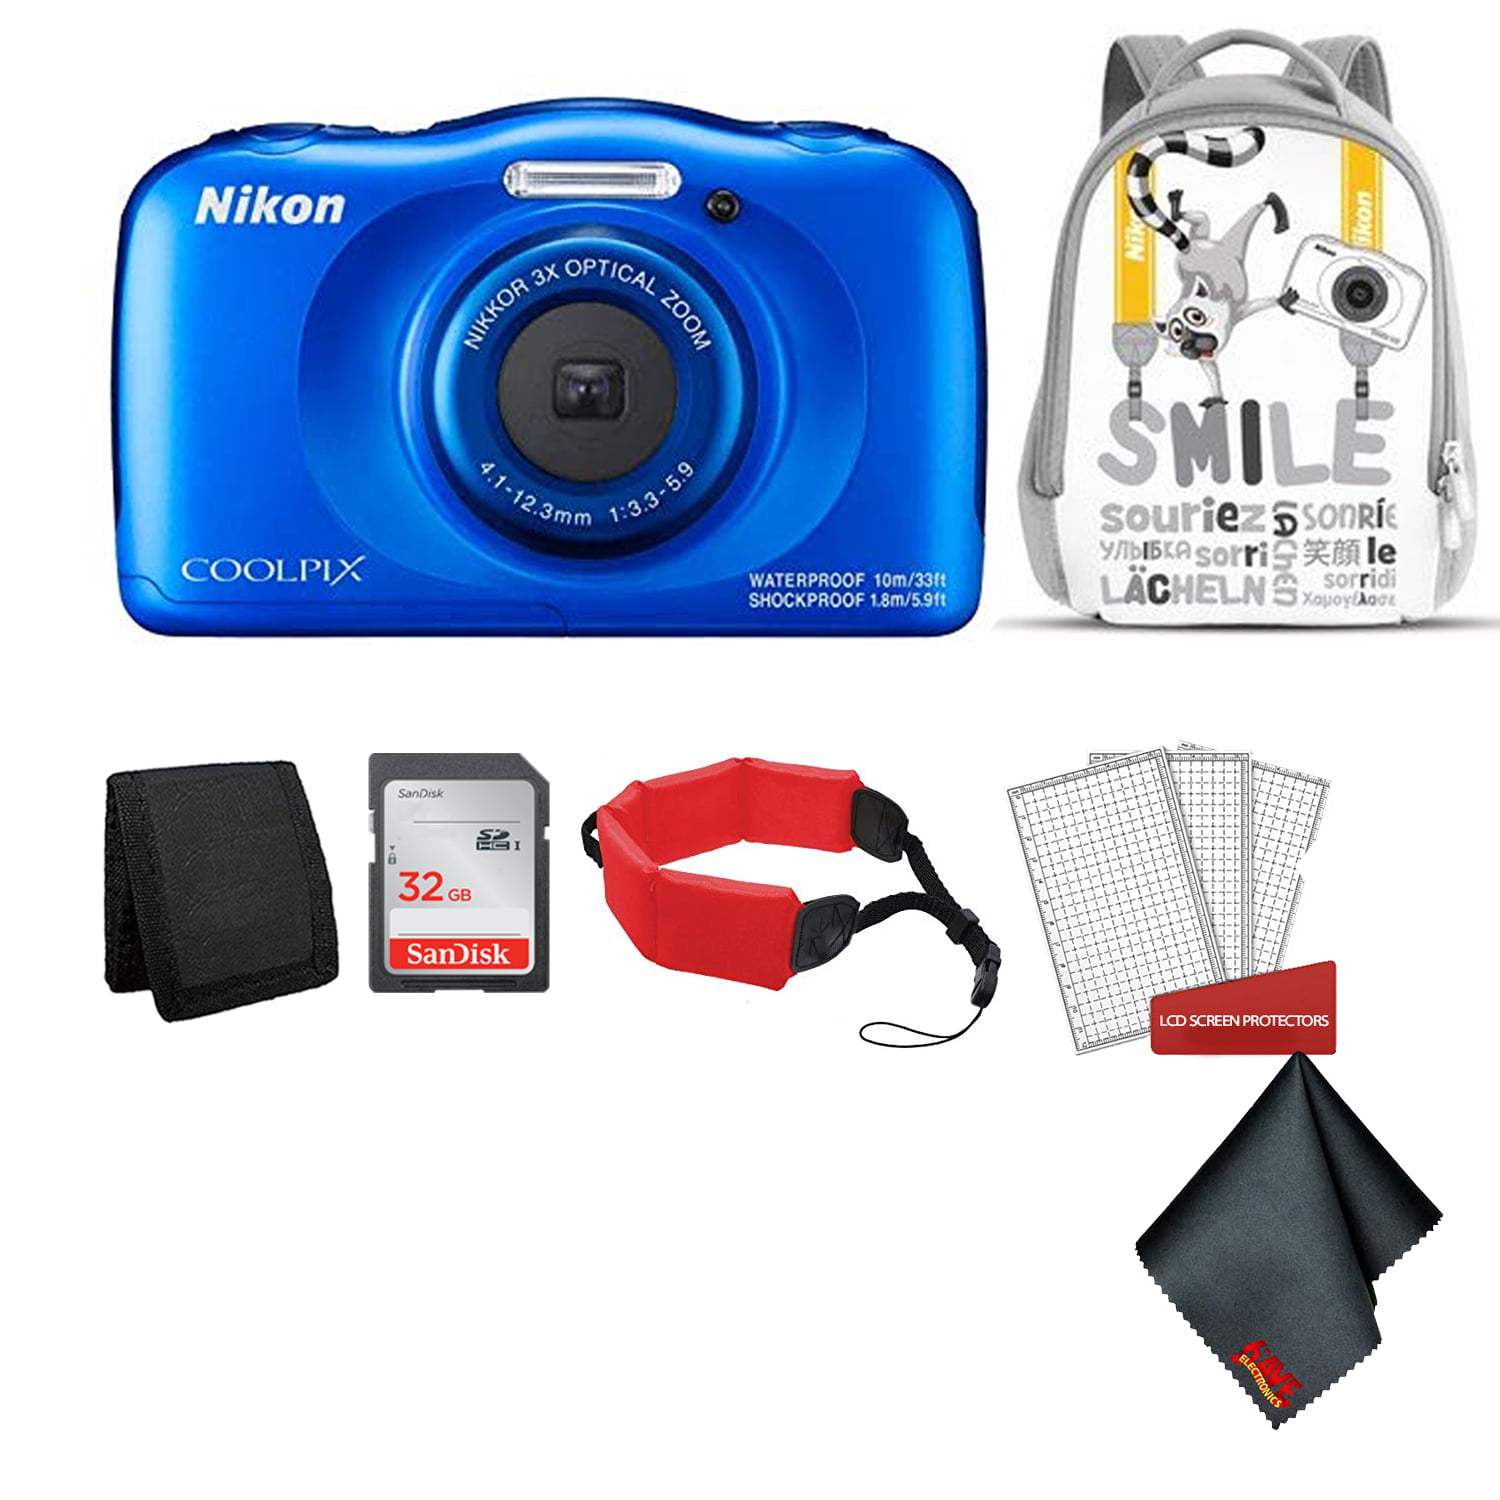 Stoutmoedig expeditie Leesbaarheid Nikon Coolpix W150 Kid-Friendly Rugged Waterproof Digital Camera (Blue)  Bundle with White Backpack + 32GB SanDisk Memory Card + More (Intl Model) -  Walmart.com